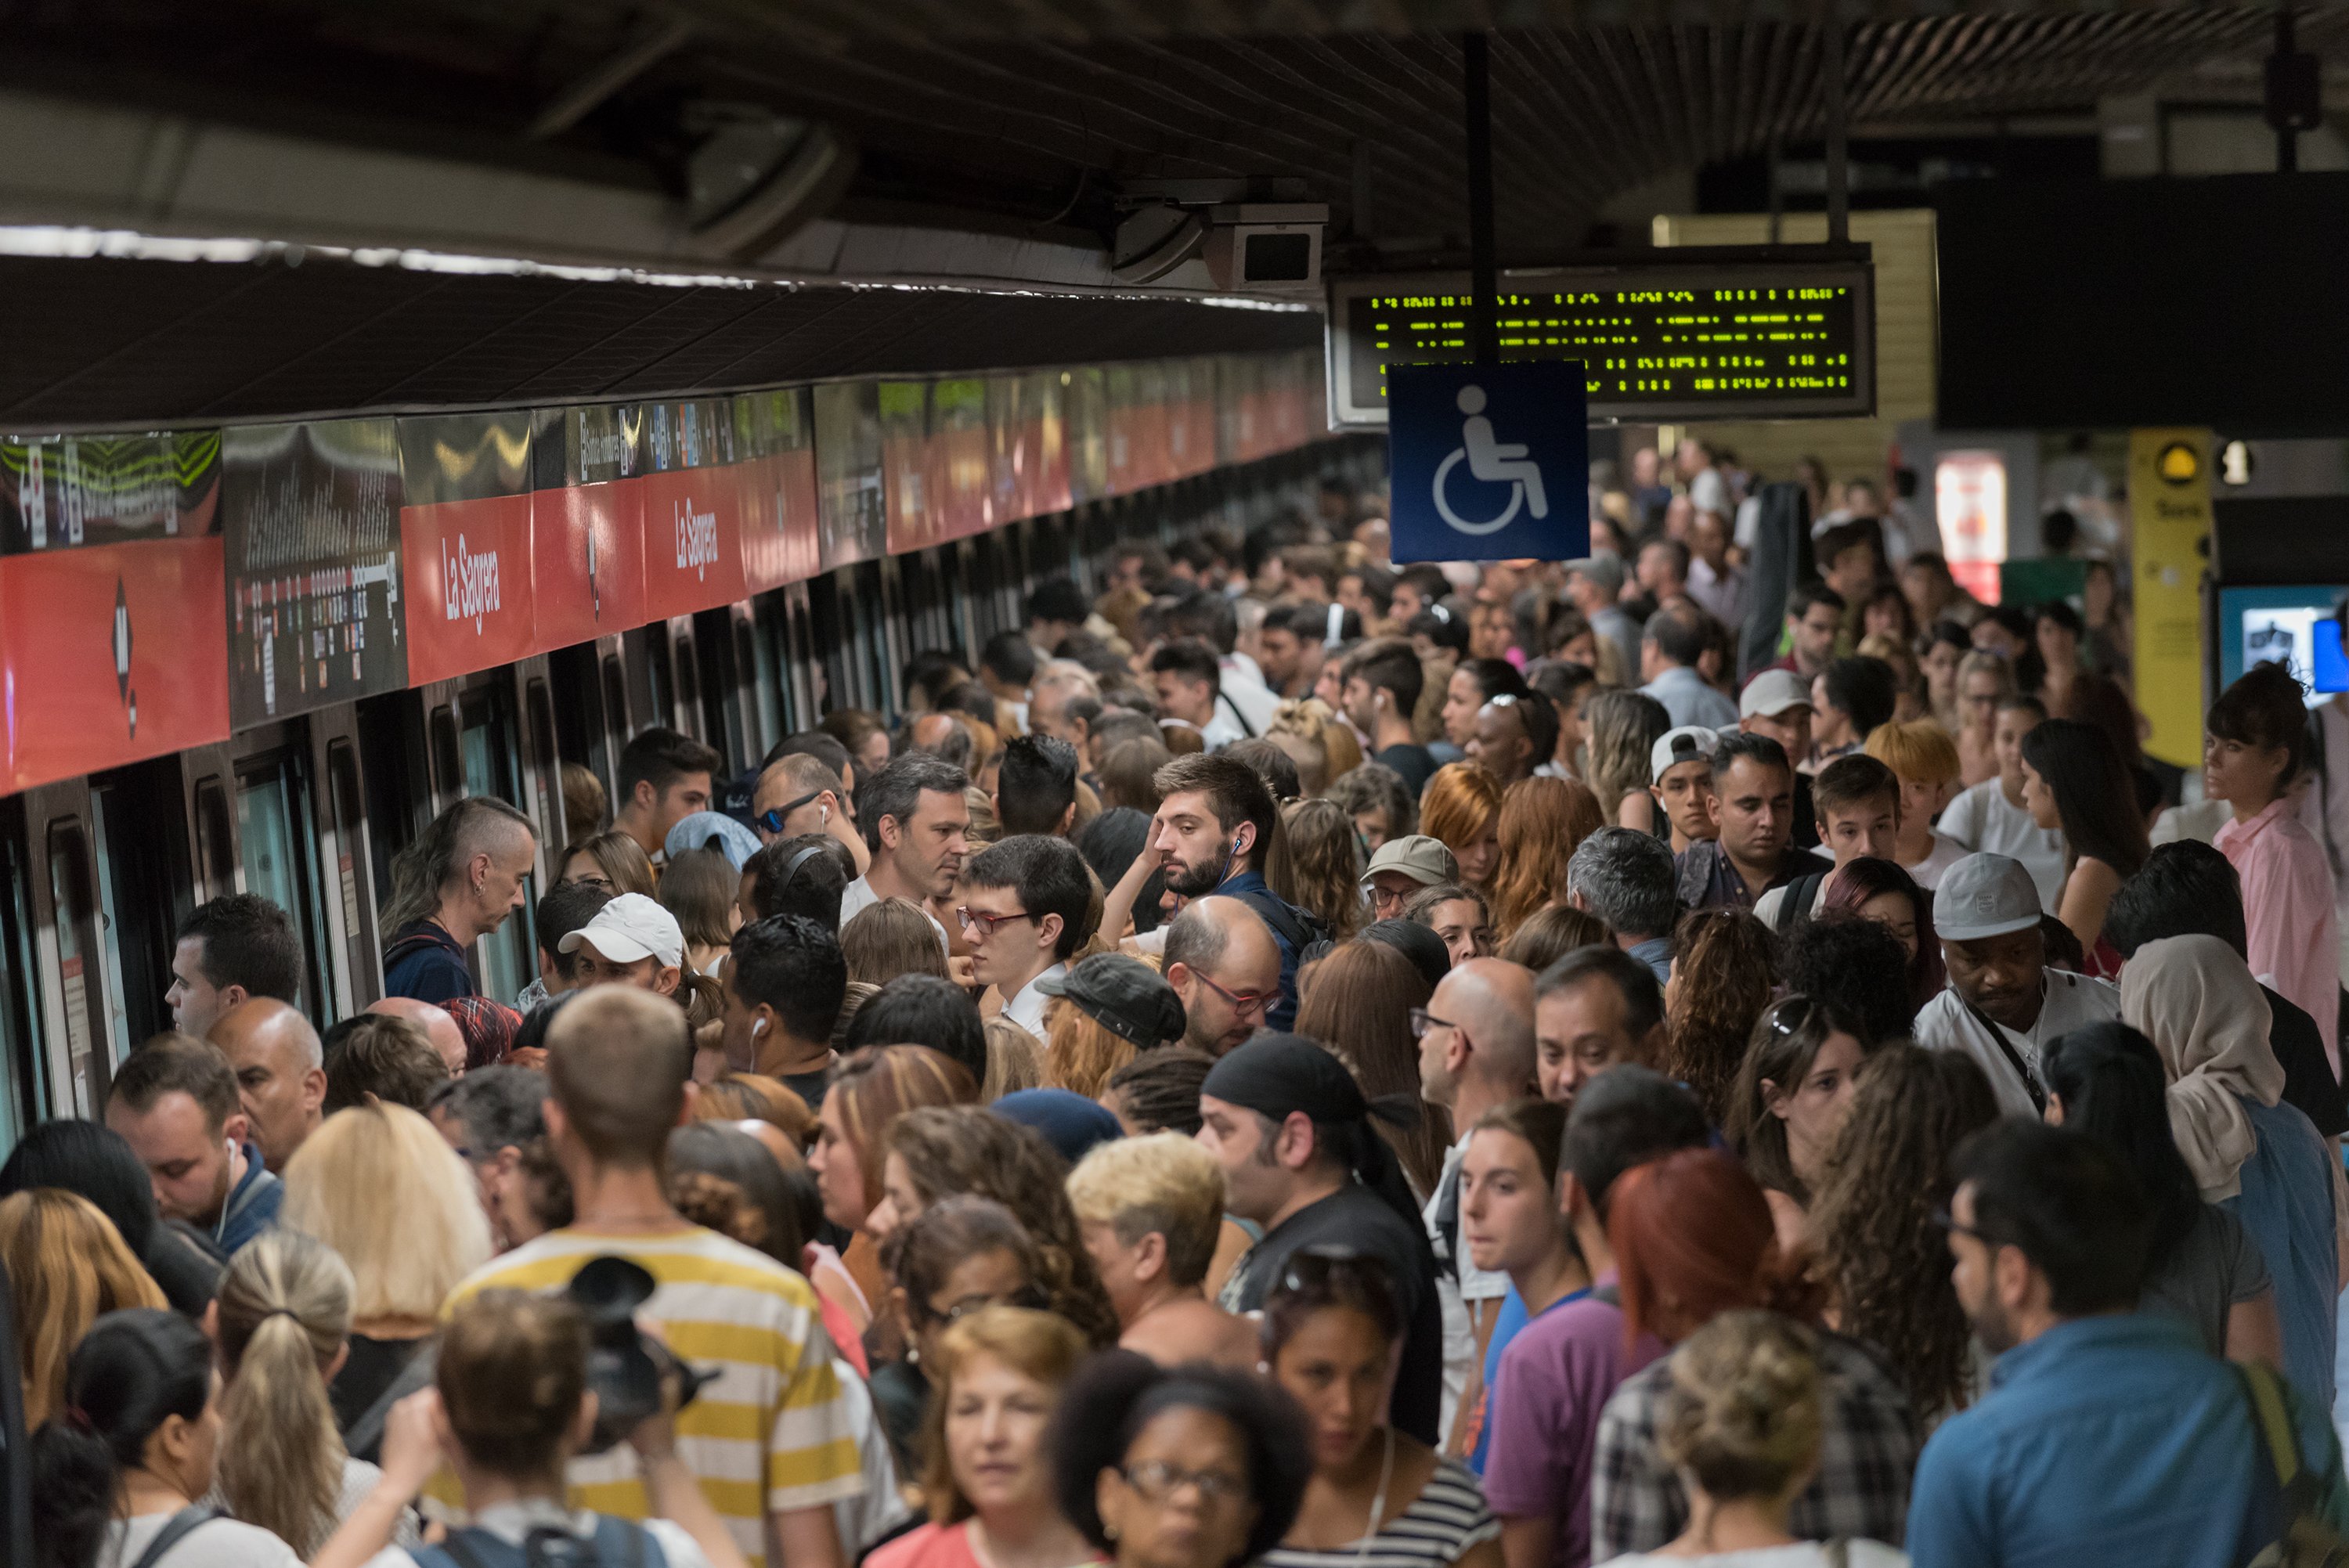 Barcelona viu l’onzè dilluns de vaga al metro